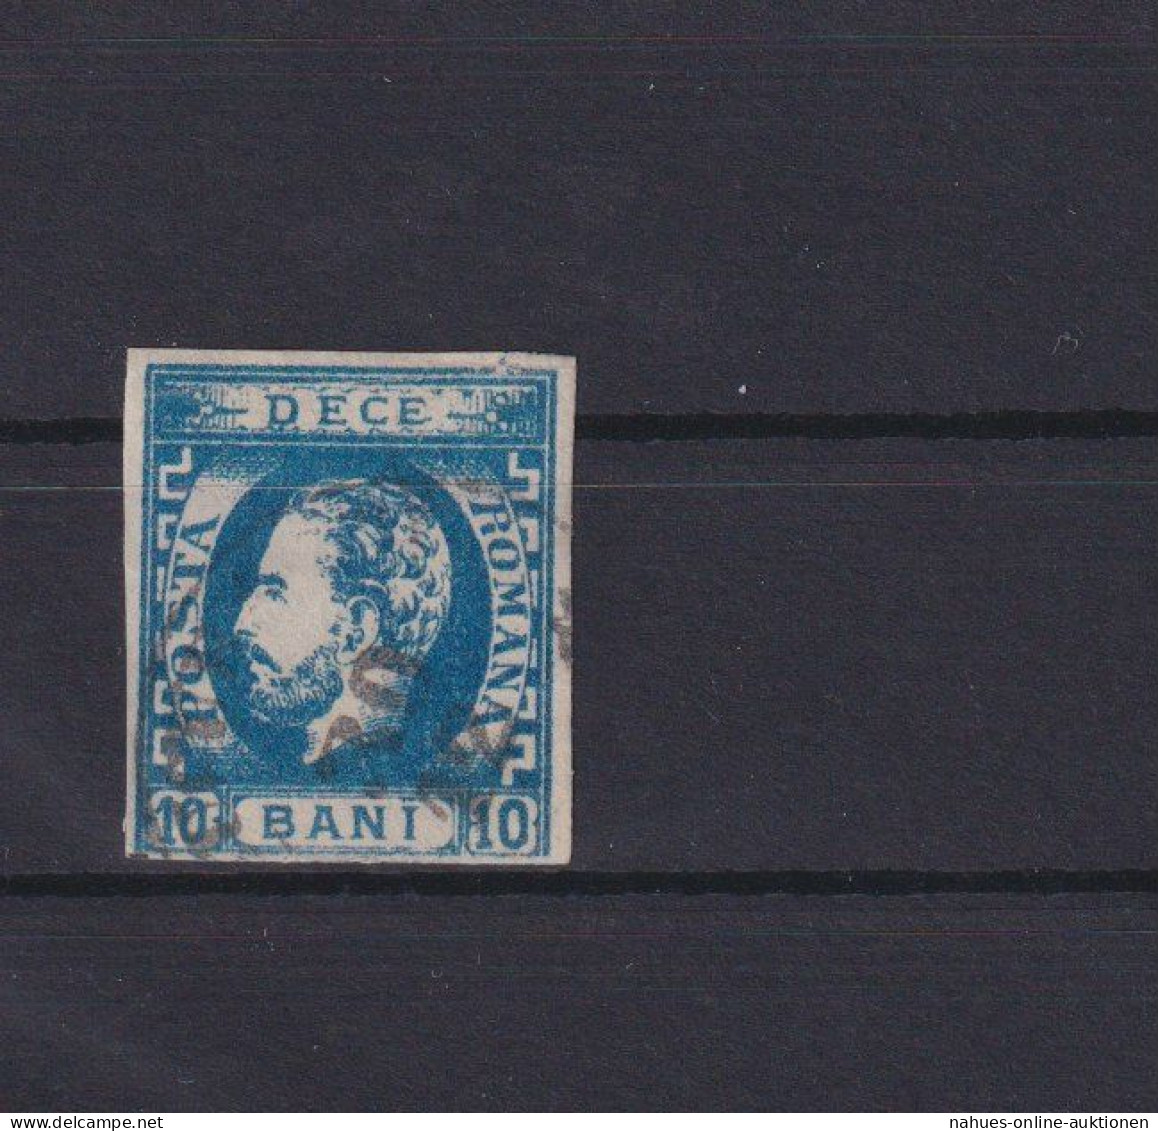 Rumänien Fürst Karl I. 29 I. 10 Bani Blau Ungebraucht Kat. 80,00 Ausgabe 1871 - Storia Postale